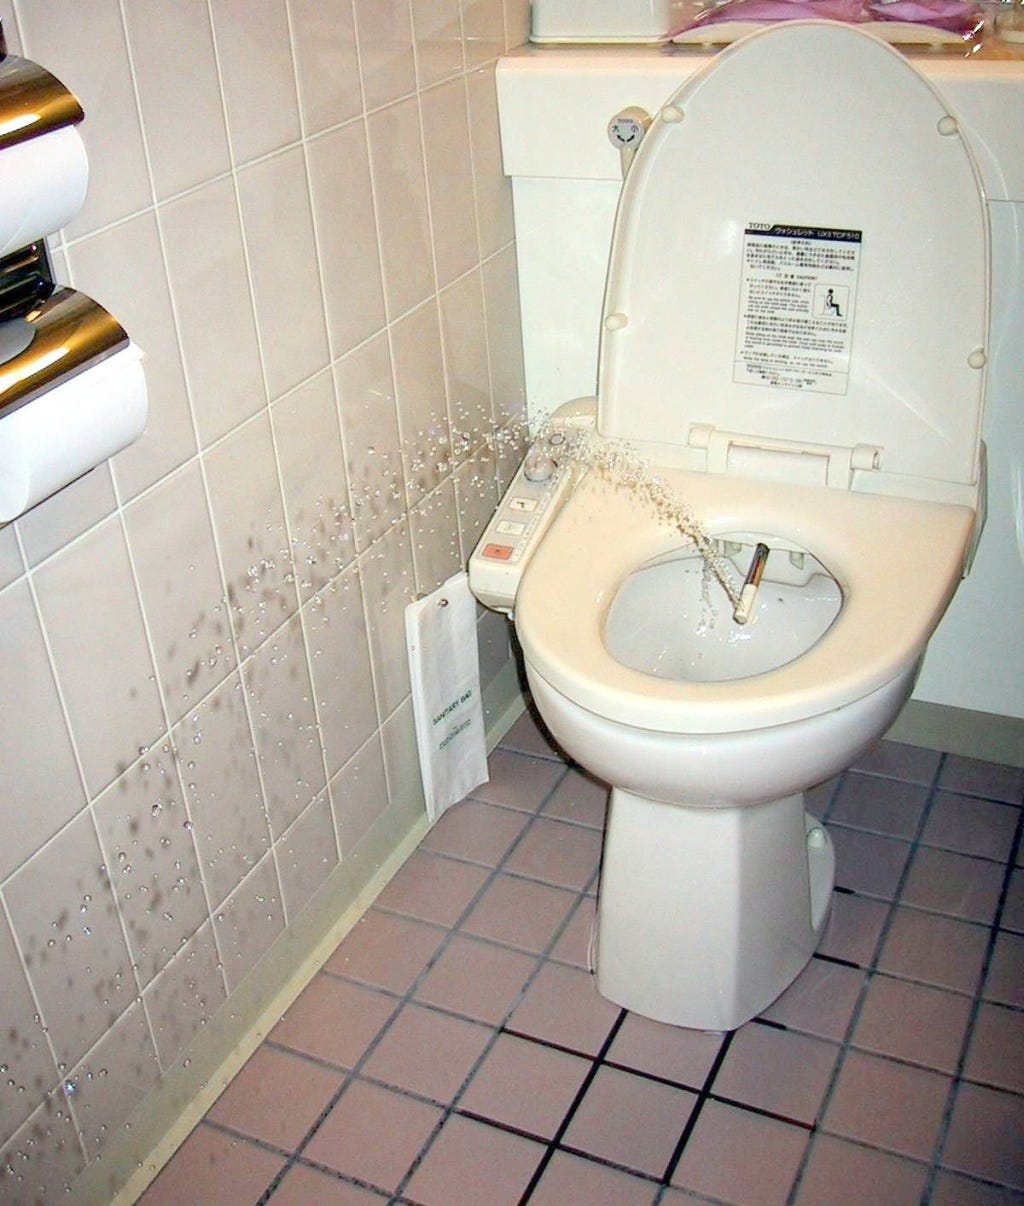 Toilets in Japan - Wikipedia